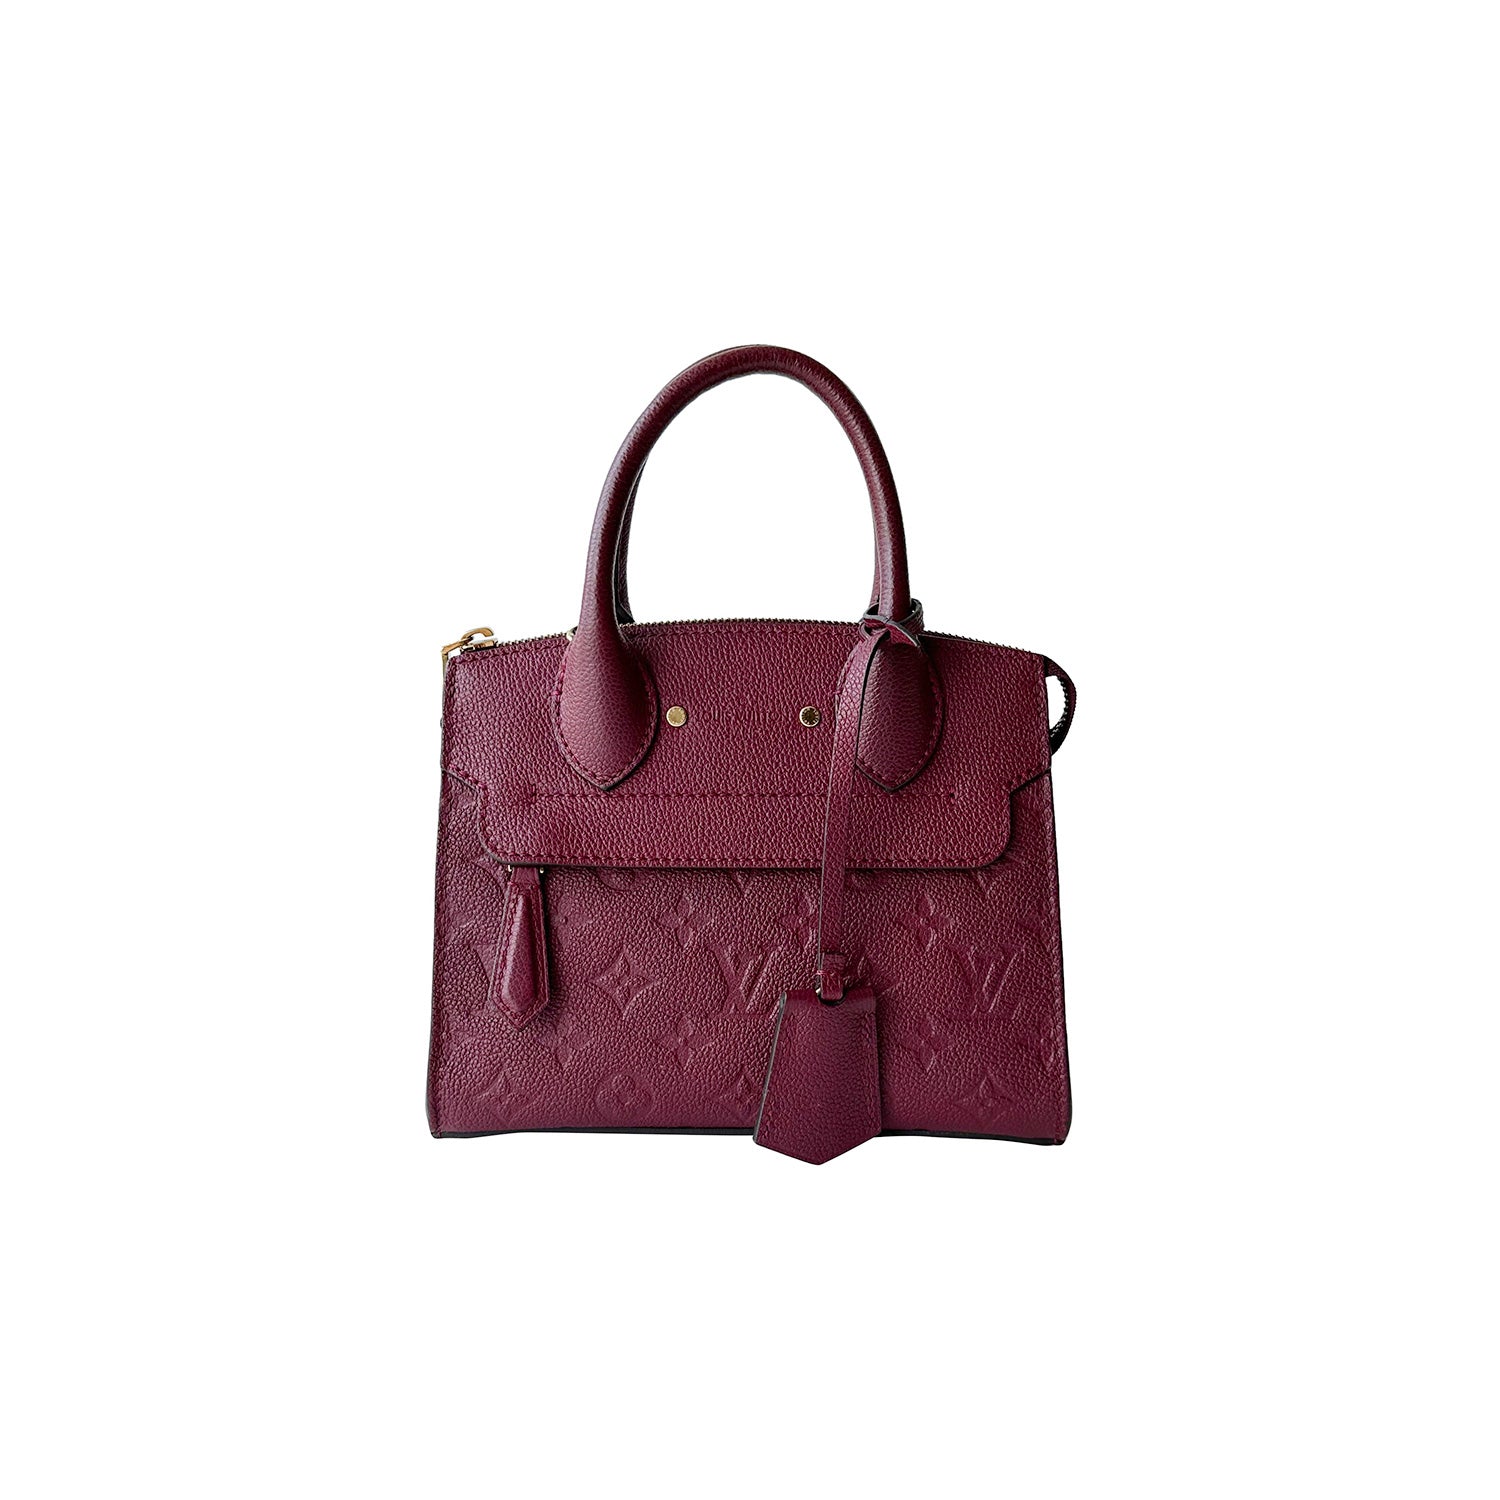 Shop authentic Louis Vuitton Monogram Duffle Bag at revogue for just USD  1,600.00